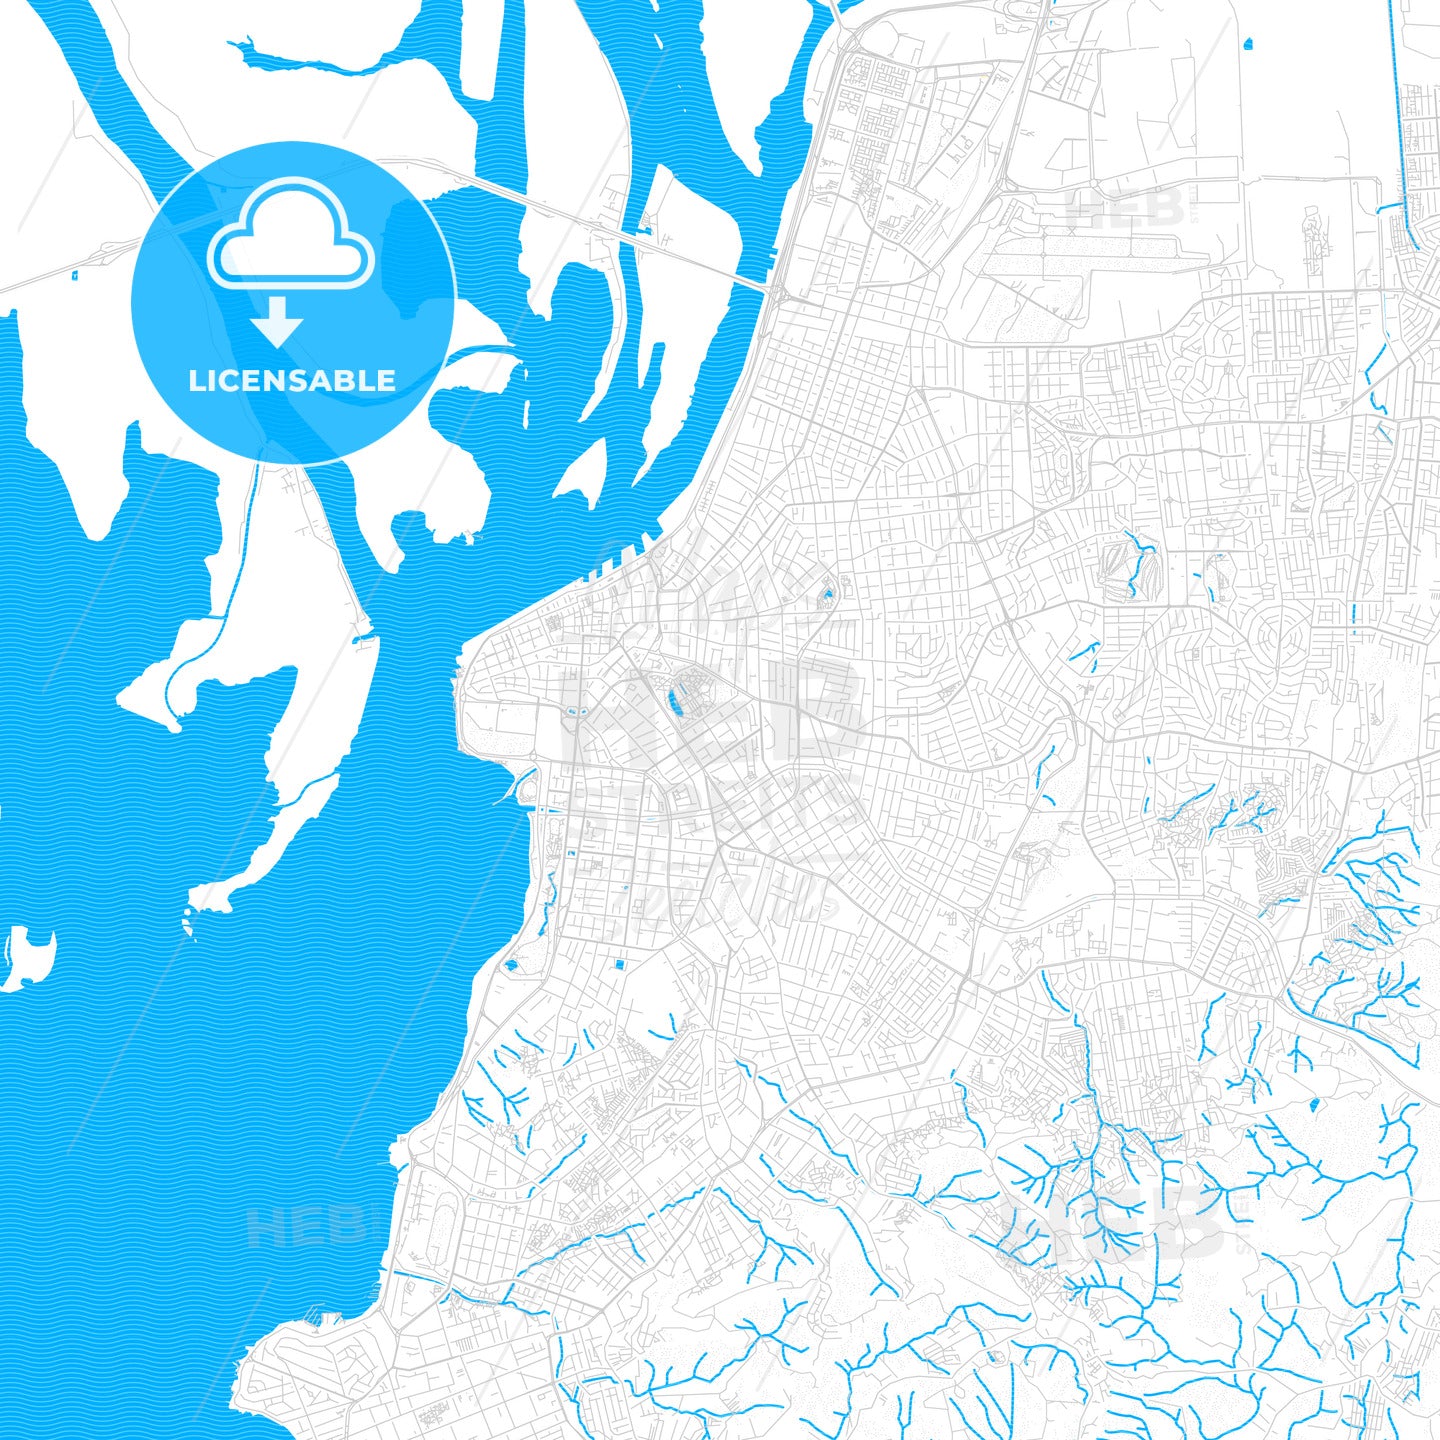 Porto Alegre, Brazil PDF vector map with water in focus